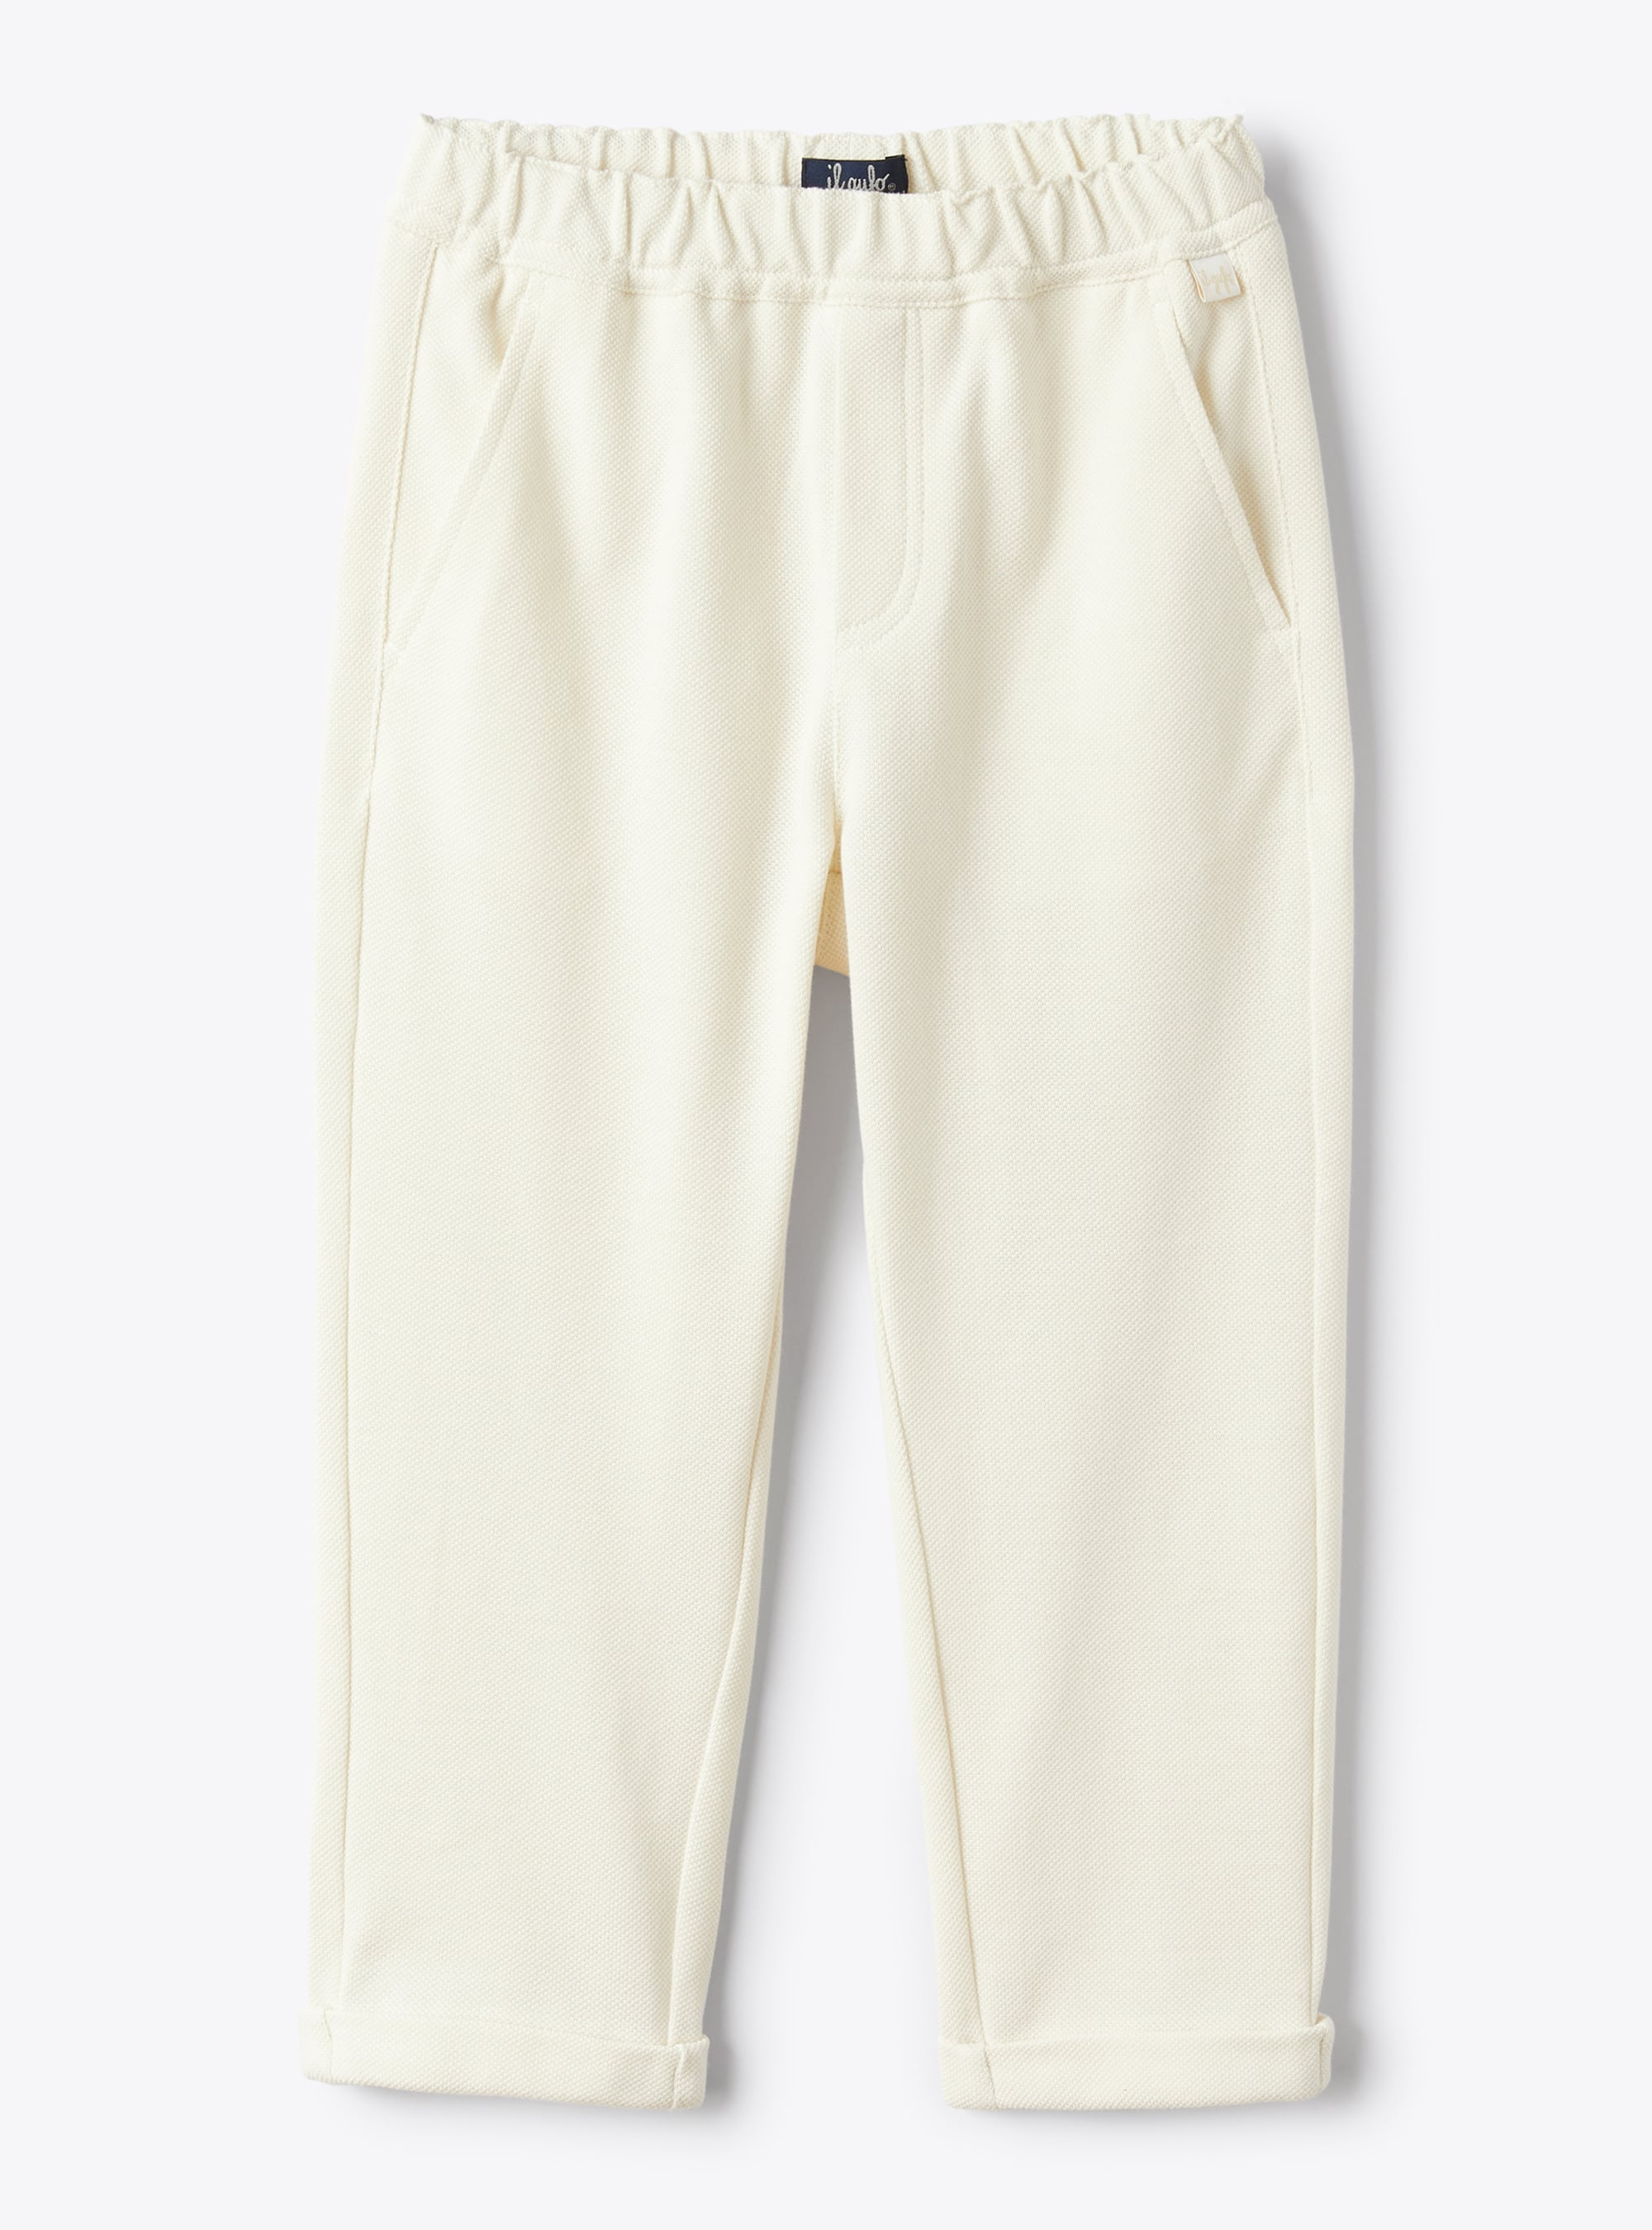 Pantalone lungo in piquet  color conchiglia - Pantaloni - Il Gufo